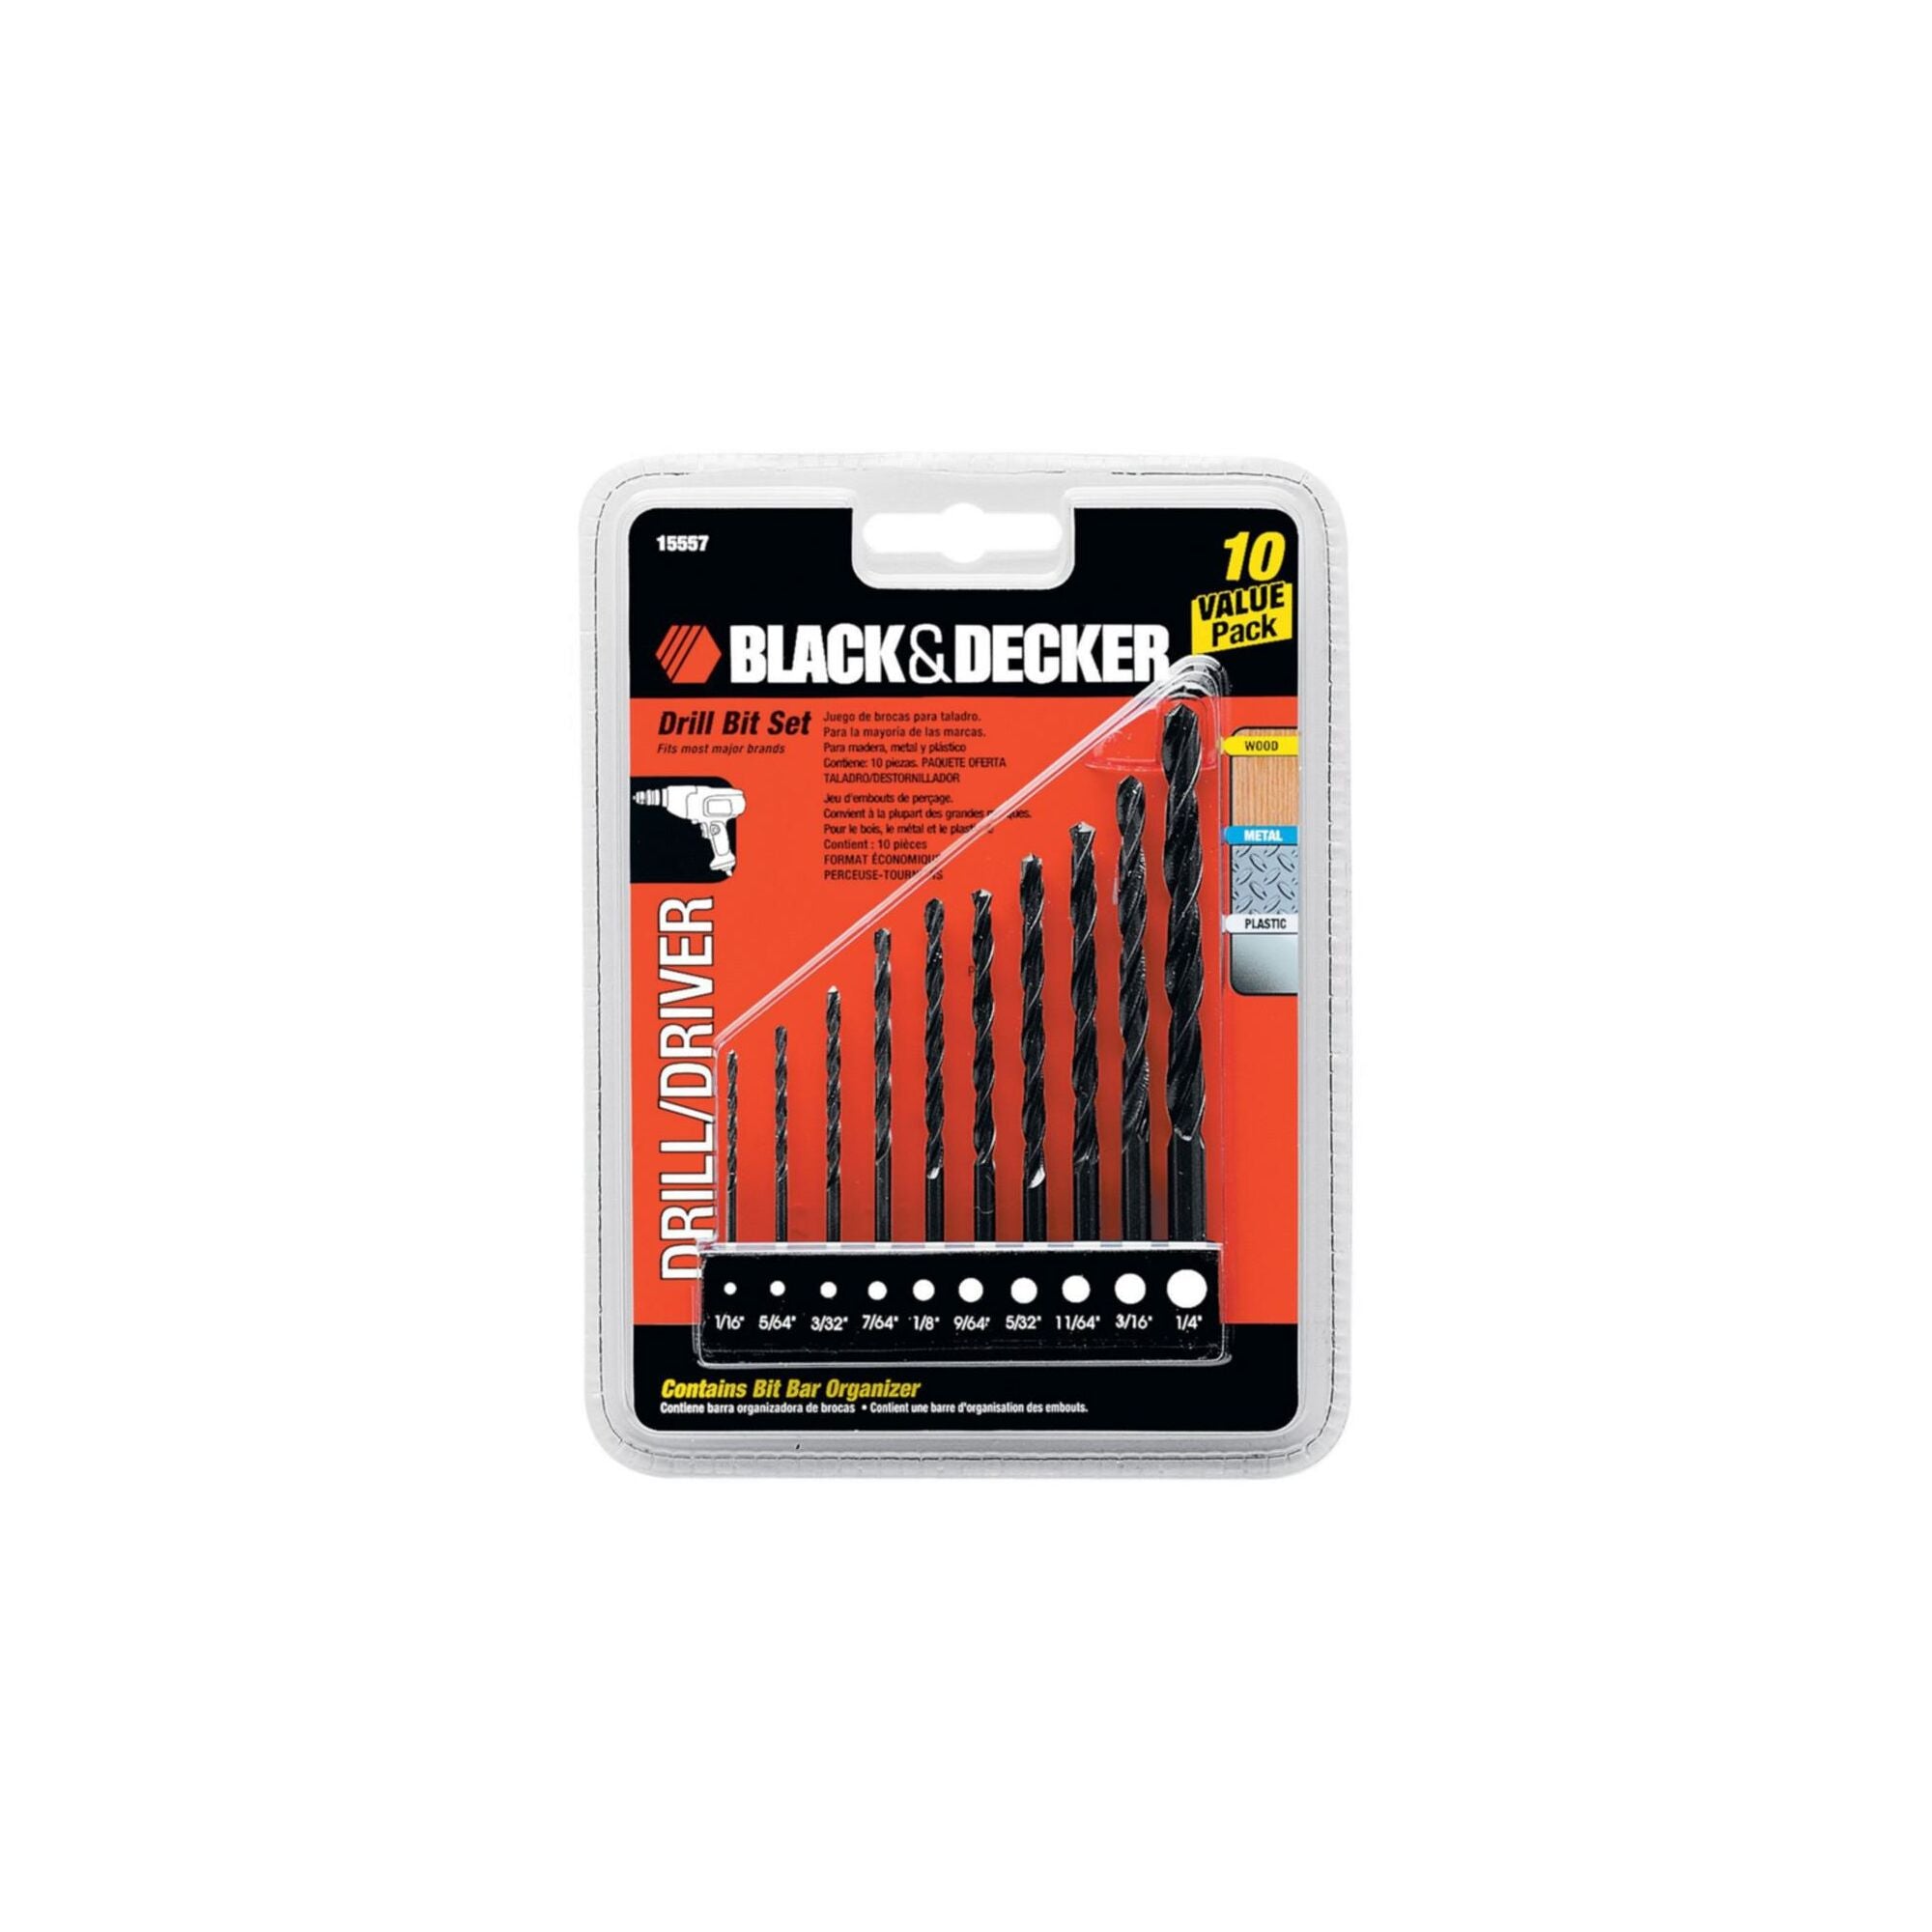 Black & Decker 15097 Drill Bit Set, 17 Pieces, 1/16 - 3/8 in